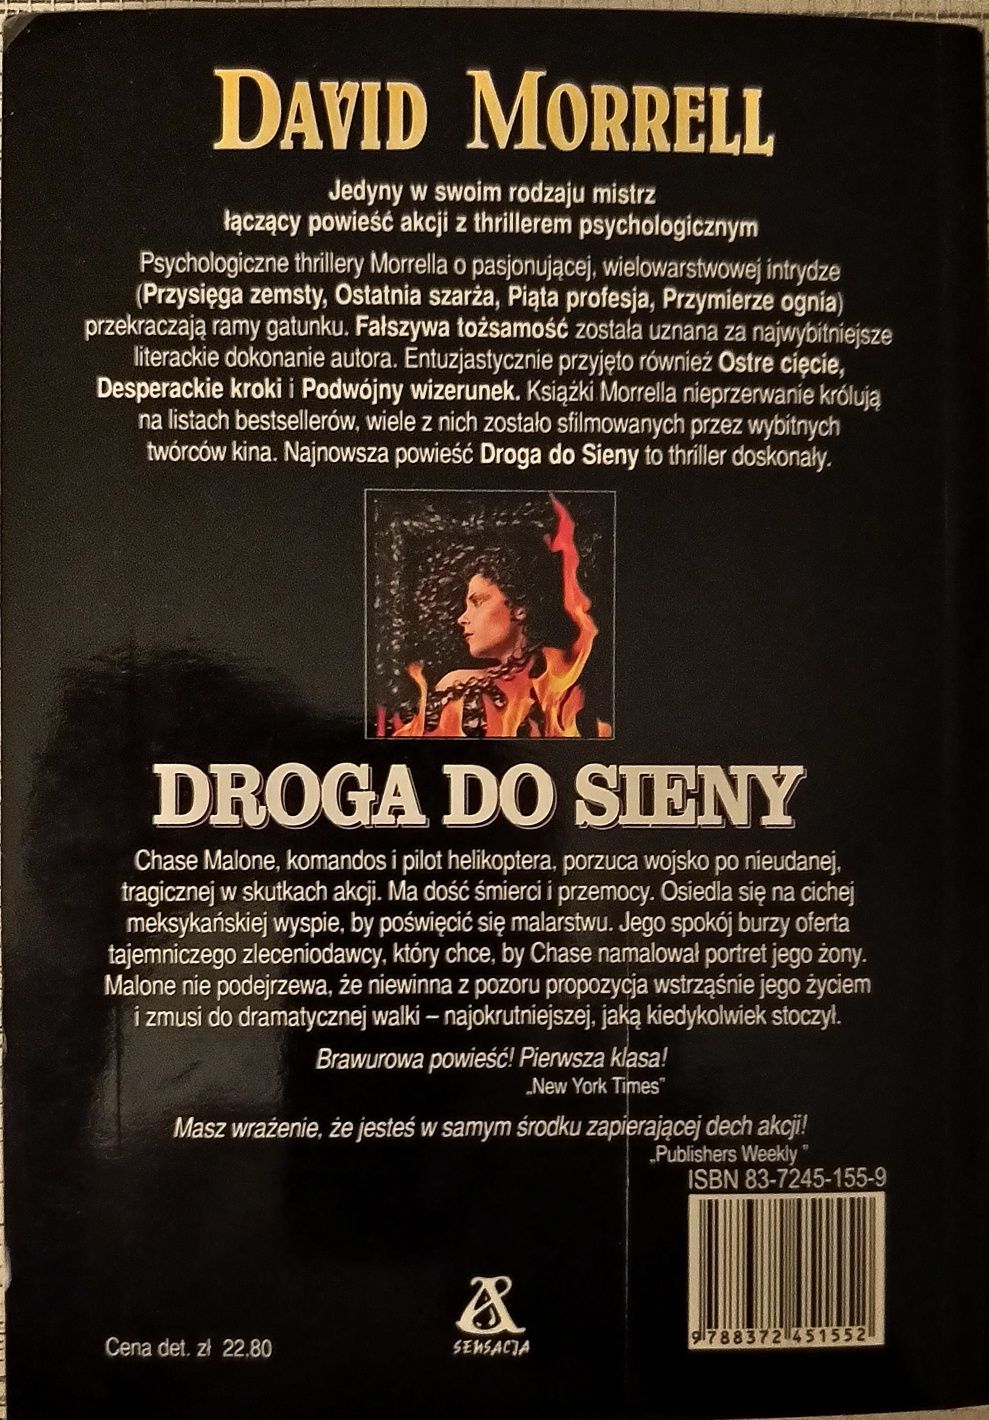 David Morrell "Droga do Sieny" I polskie wydanie